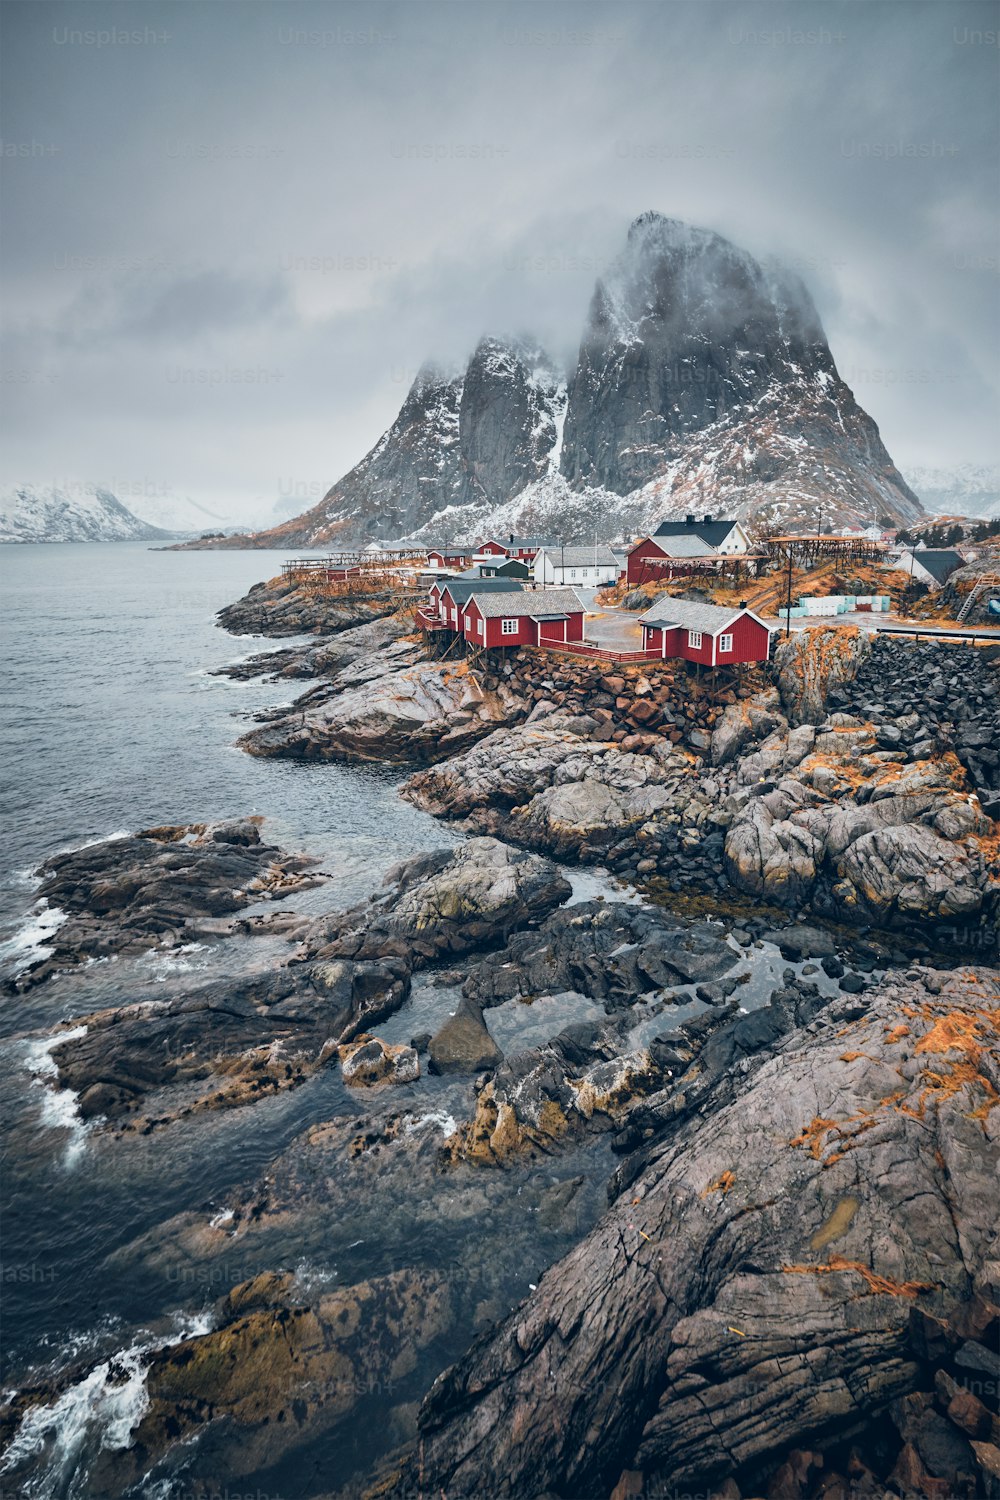 Famosa atracción turística del pueblo pesquero de Hamnoy en las islas Lofoten, Noruega, con casas rorbu rojas. Con la nieve cayendo en invierno